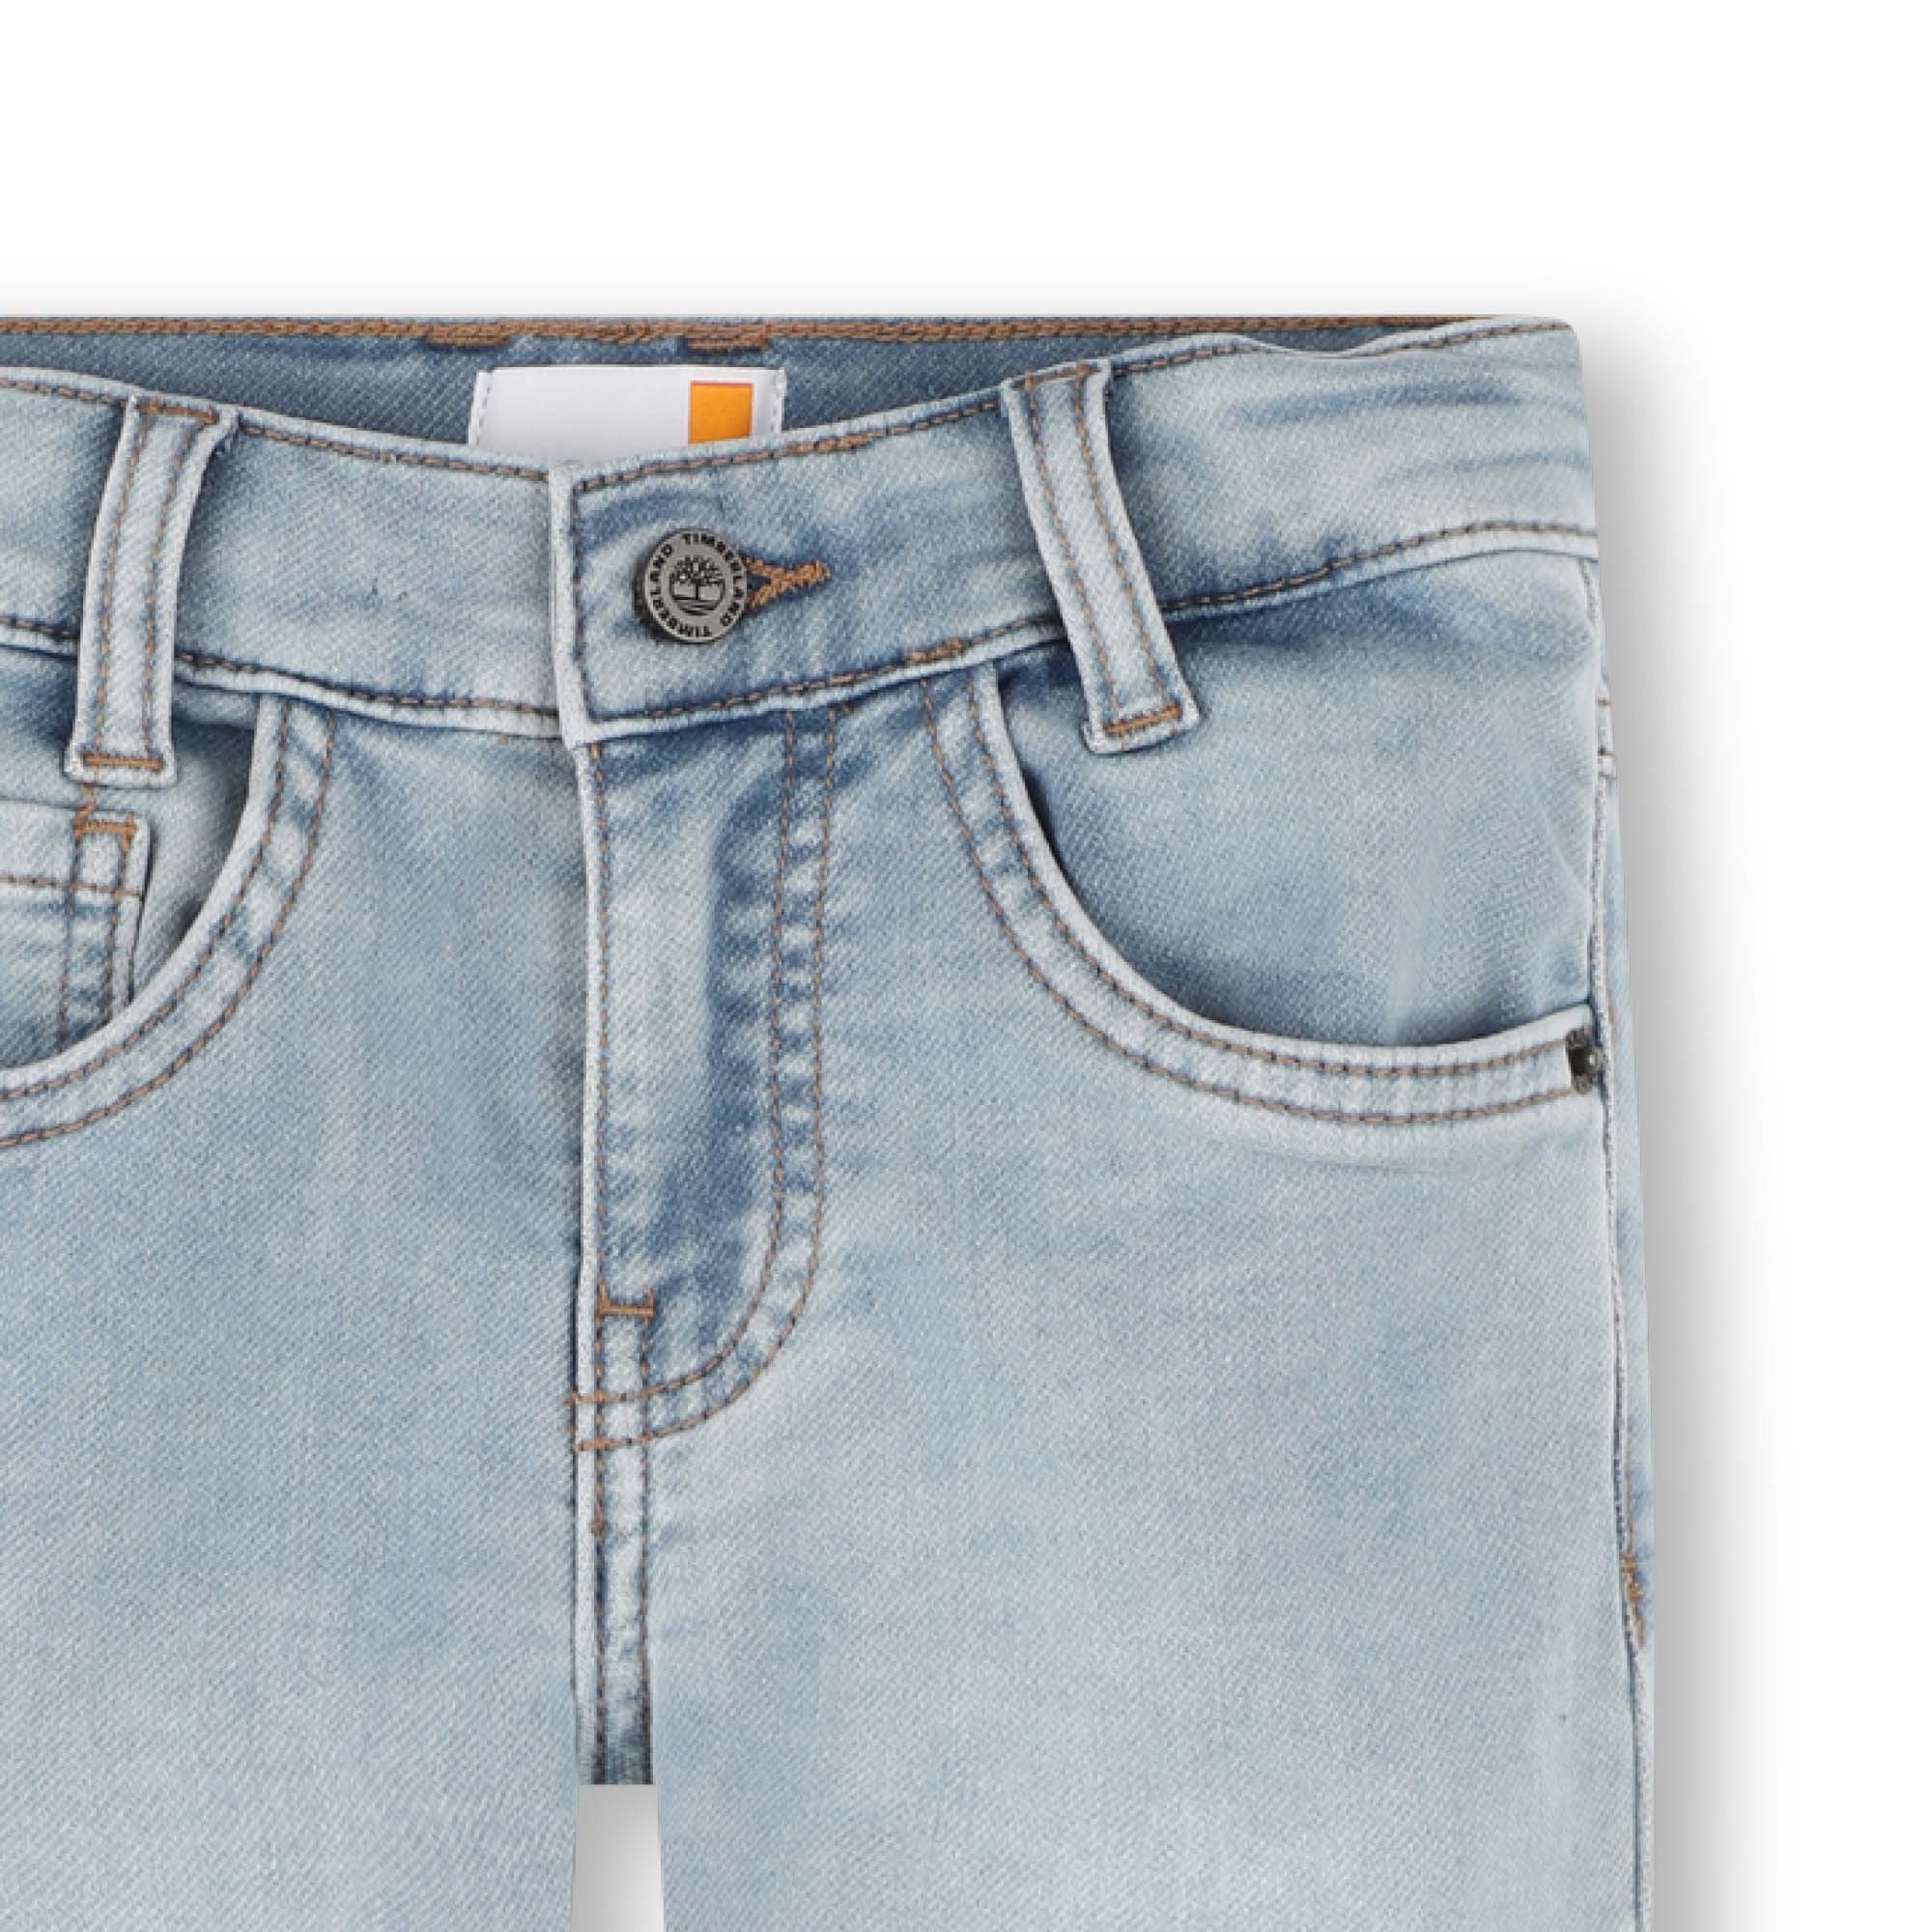 Taillierte 5-Pocket-Jeans TIMBERLAND Für JUNGE